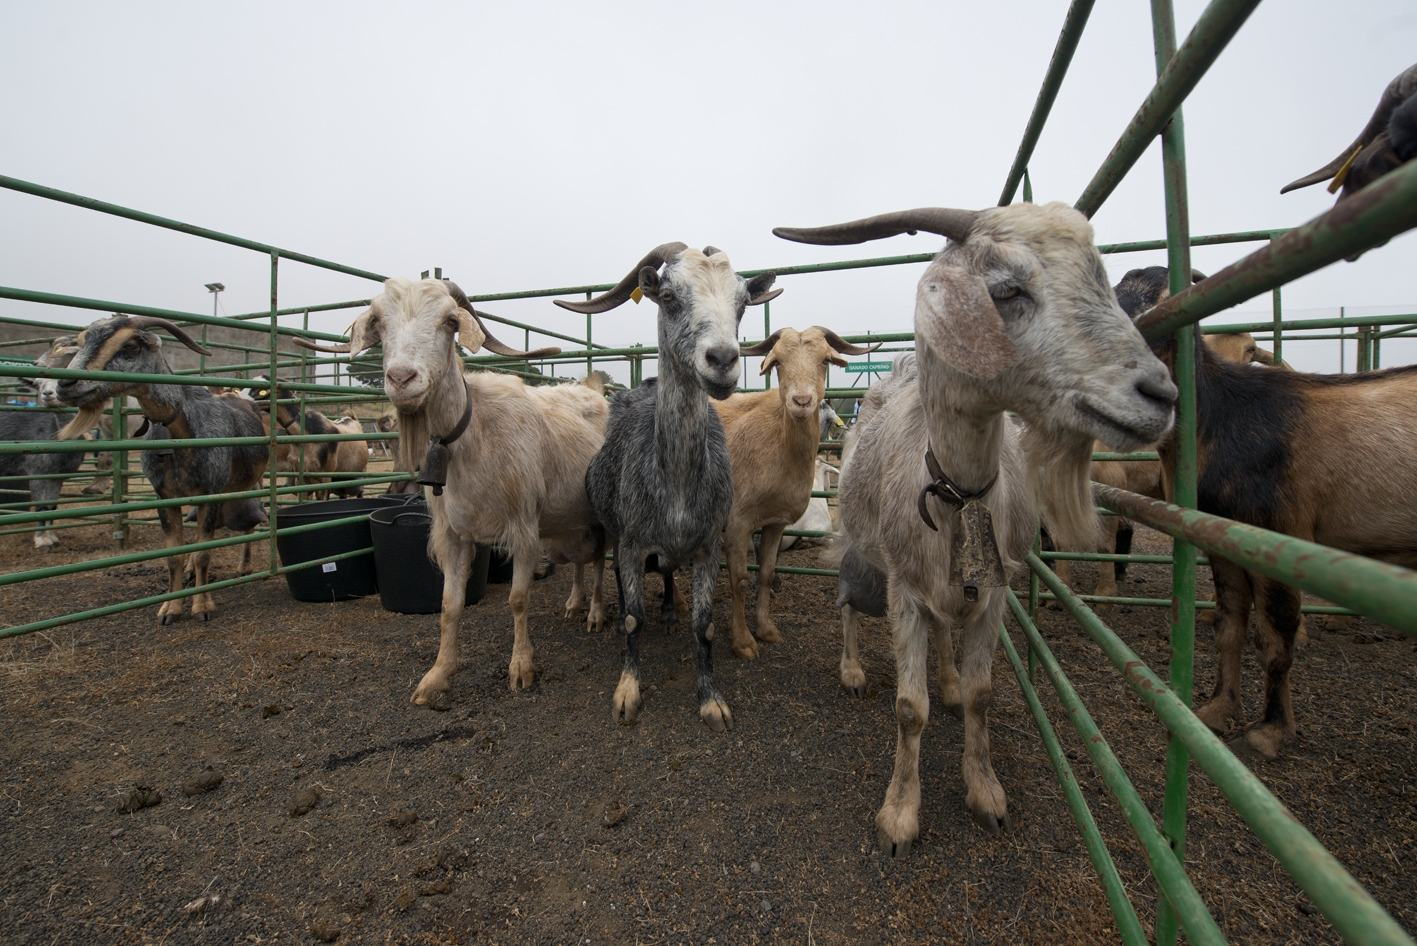 La Consejería Medio Rural y Marino anuncia ayudas a la importación de forraje para los ganaderos herreños